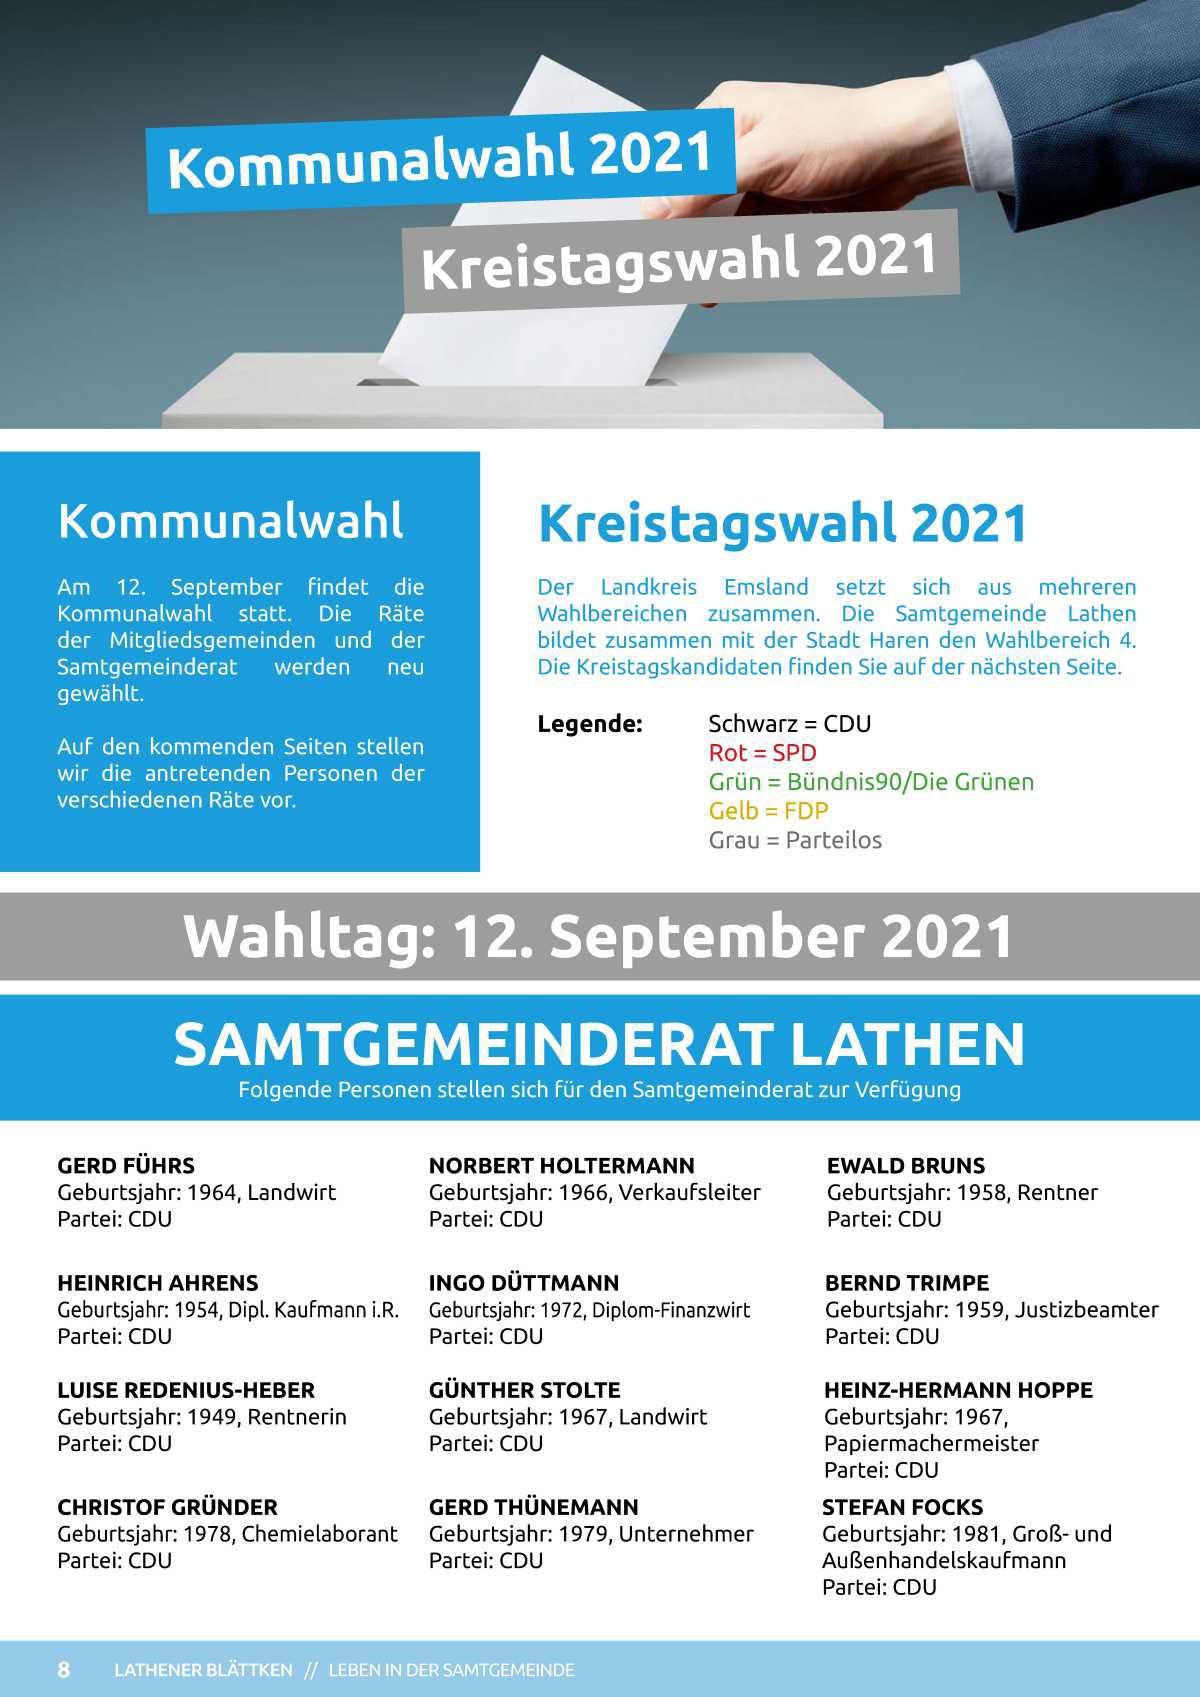 Kommunalwahl 2021 in der Samtgemeinde Lathen